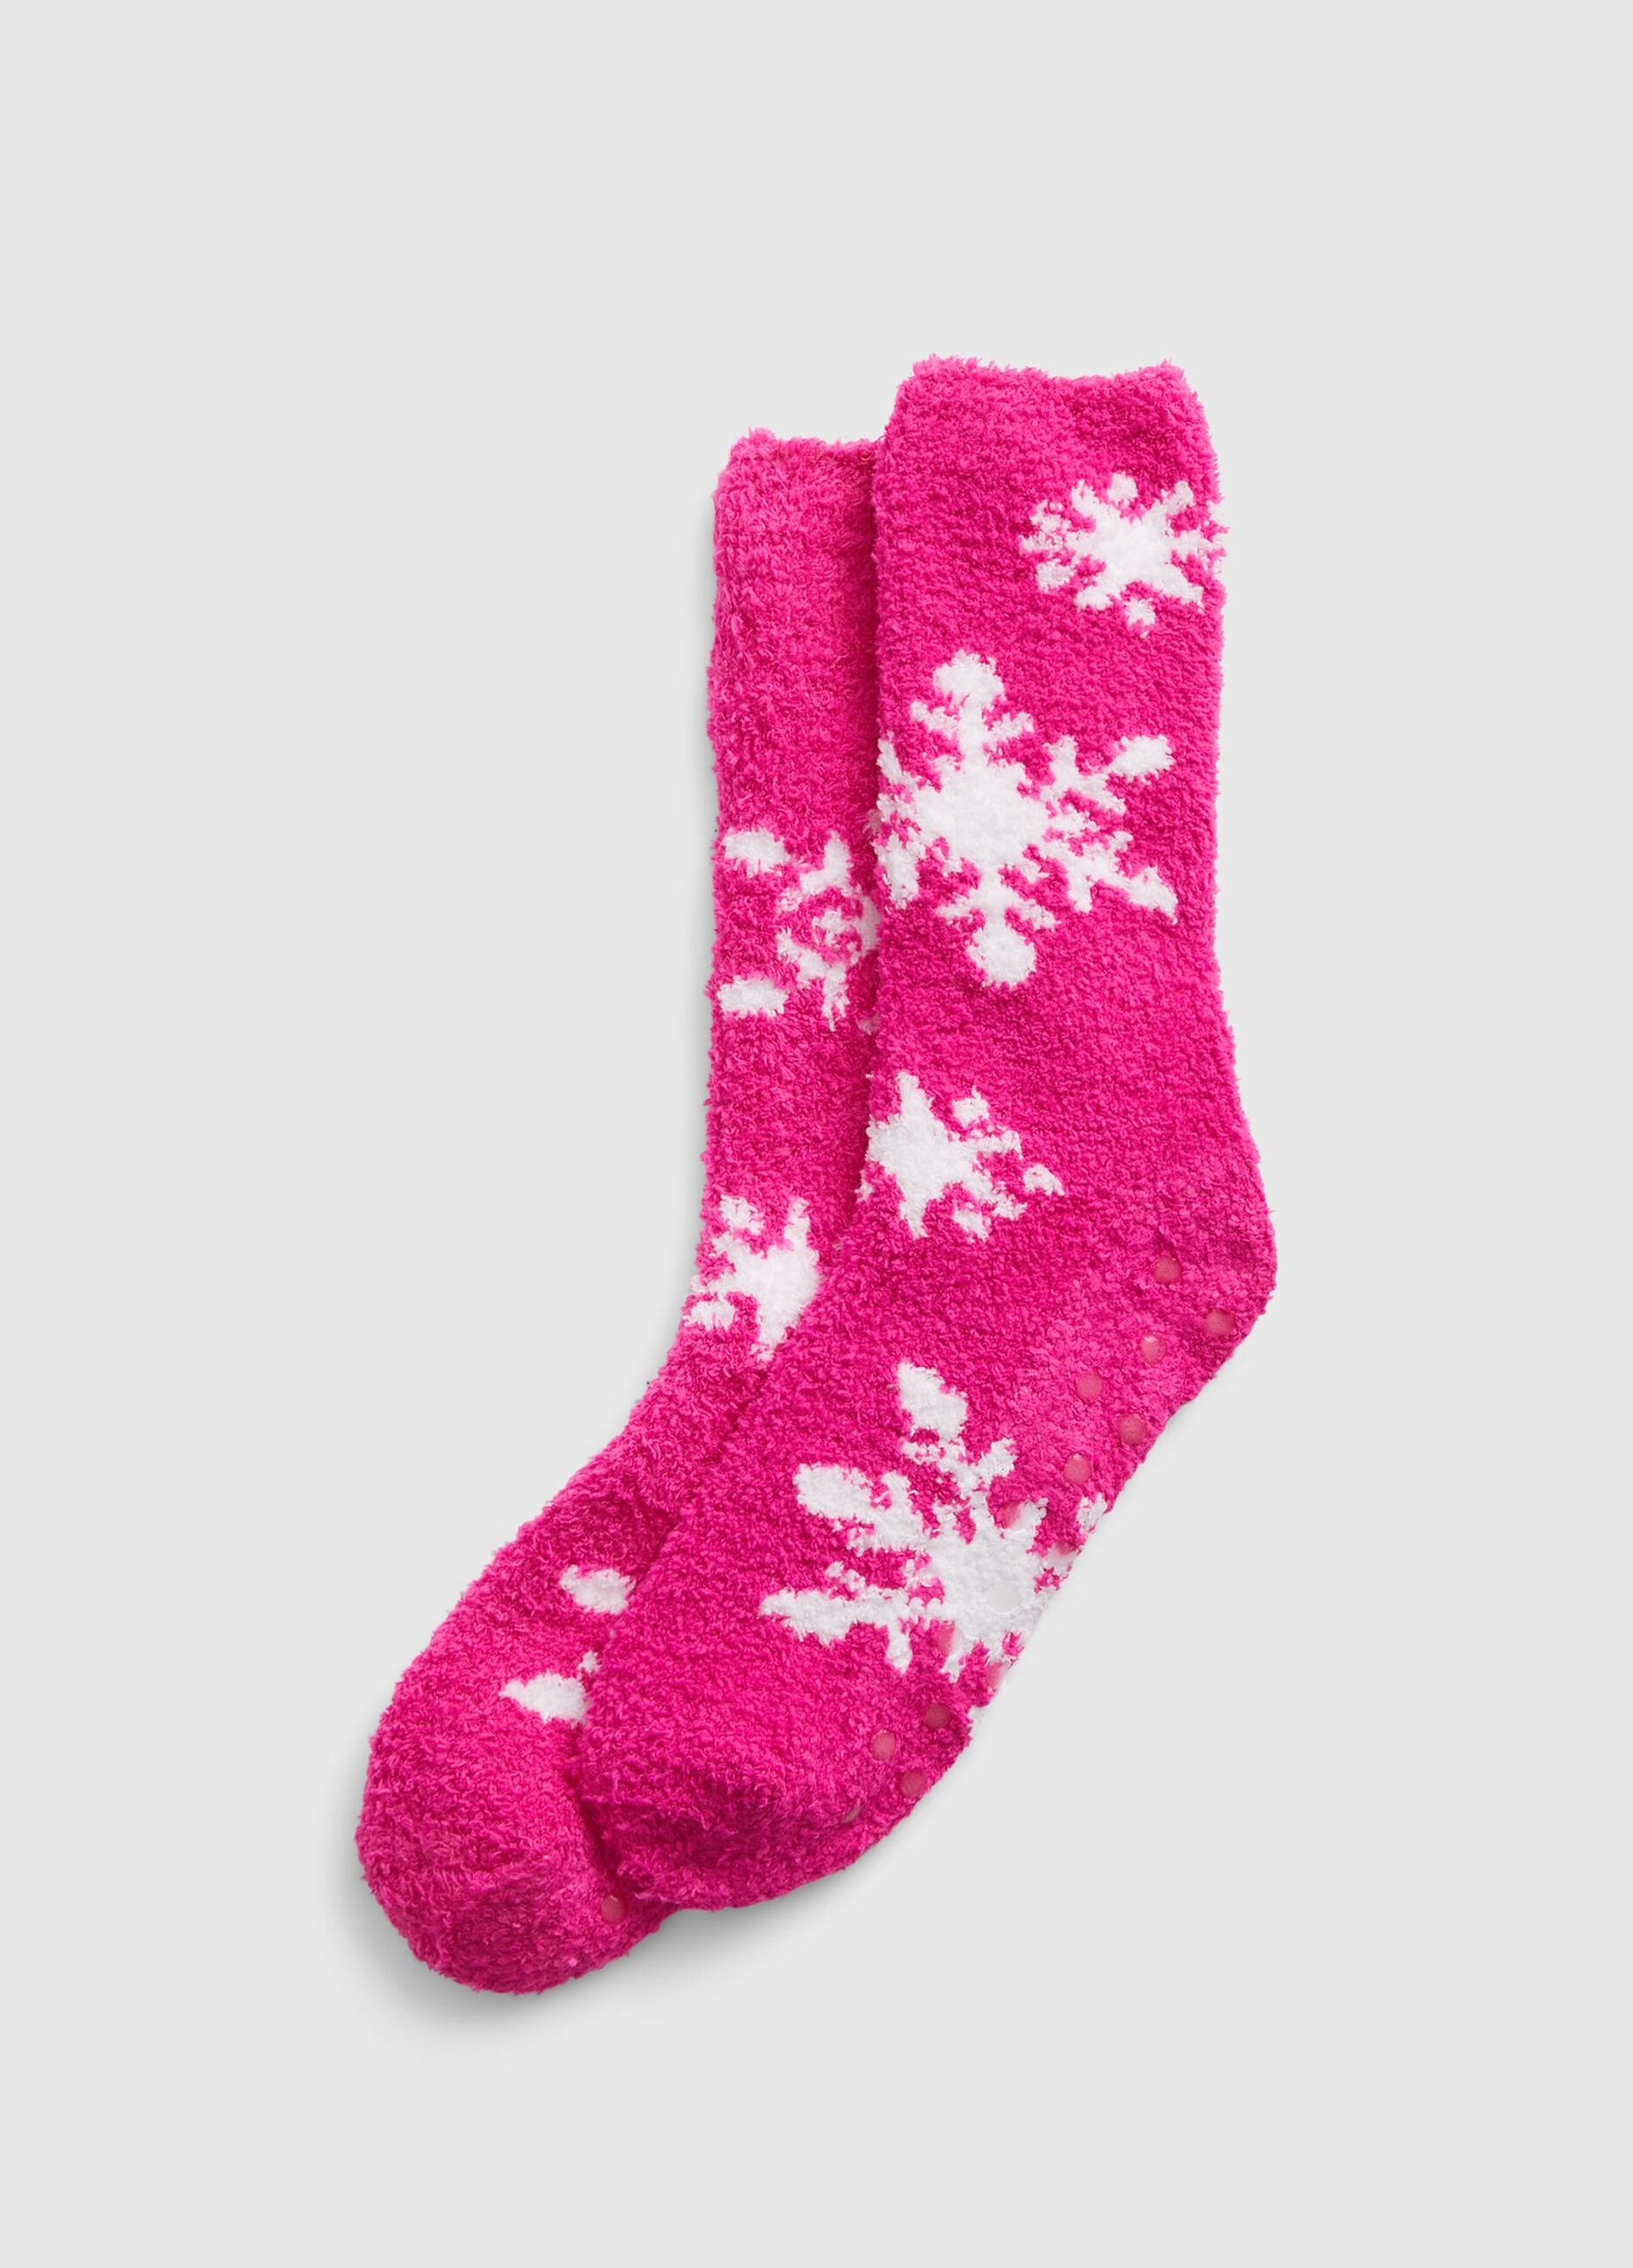 Snowflake slipper socks